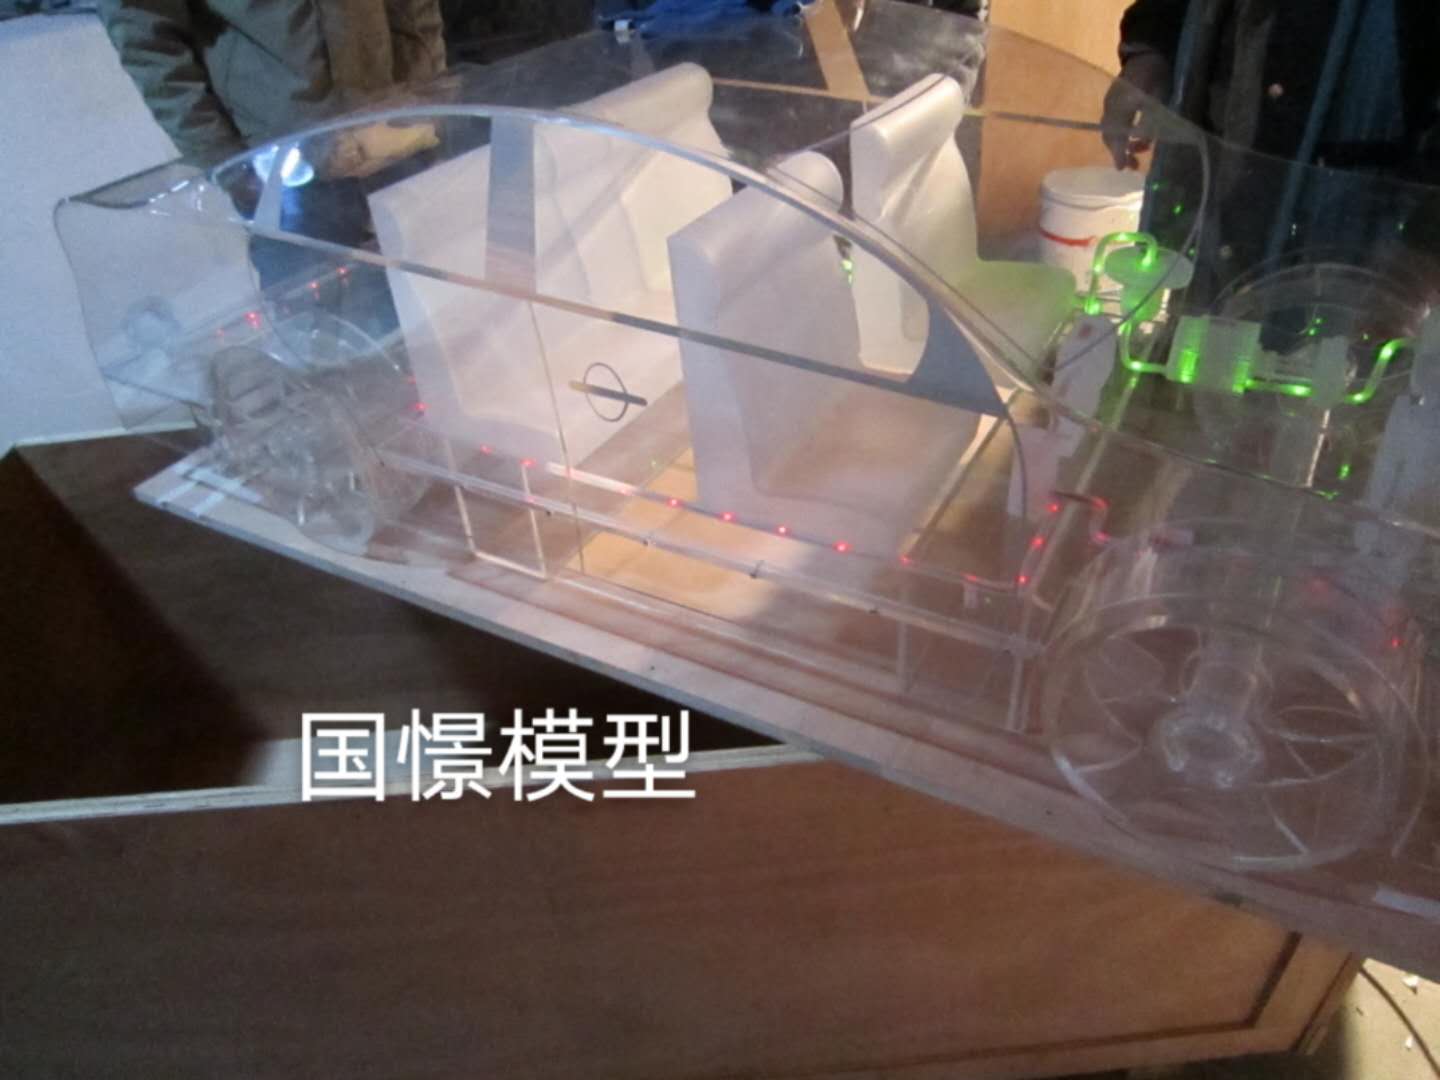 绥滨县透明车模型